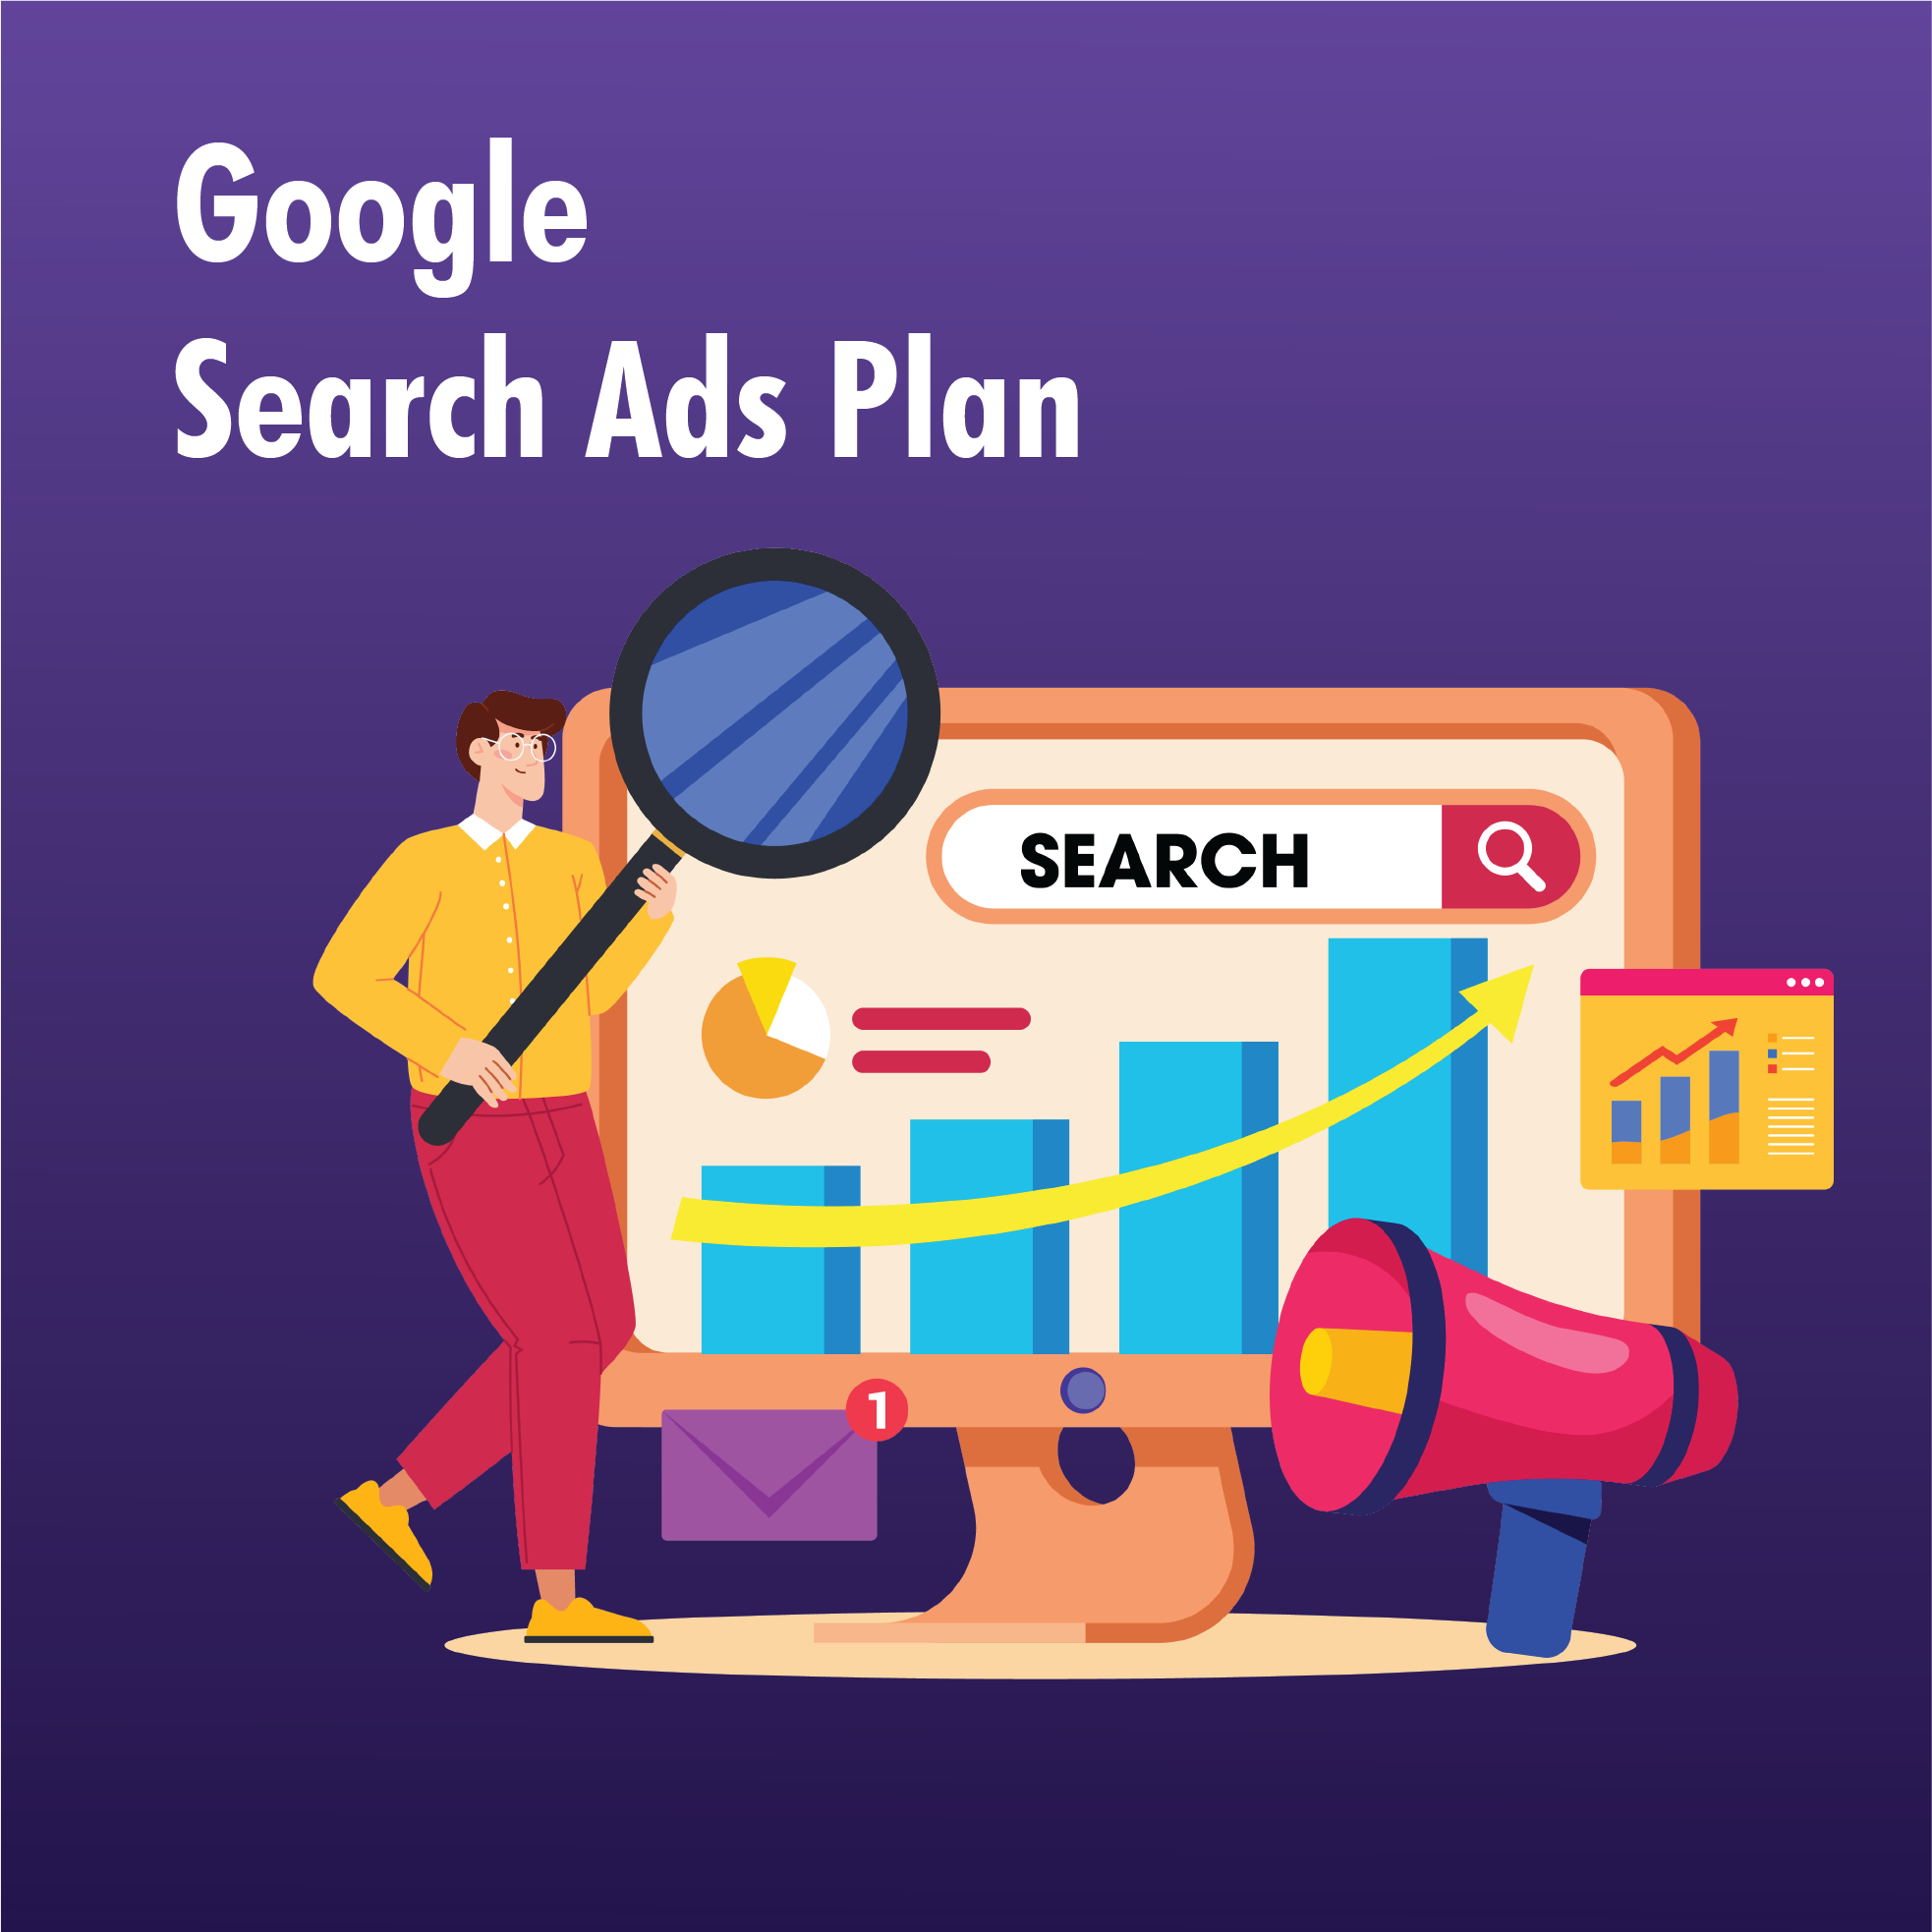 Google Search Ads Plan